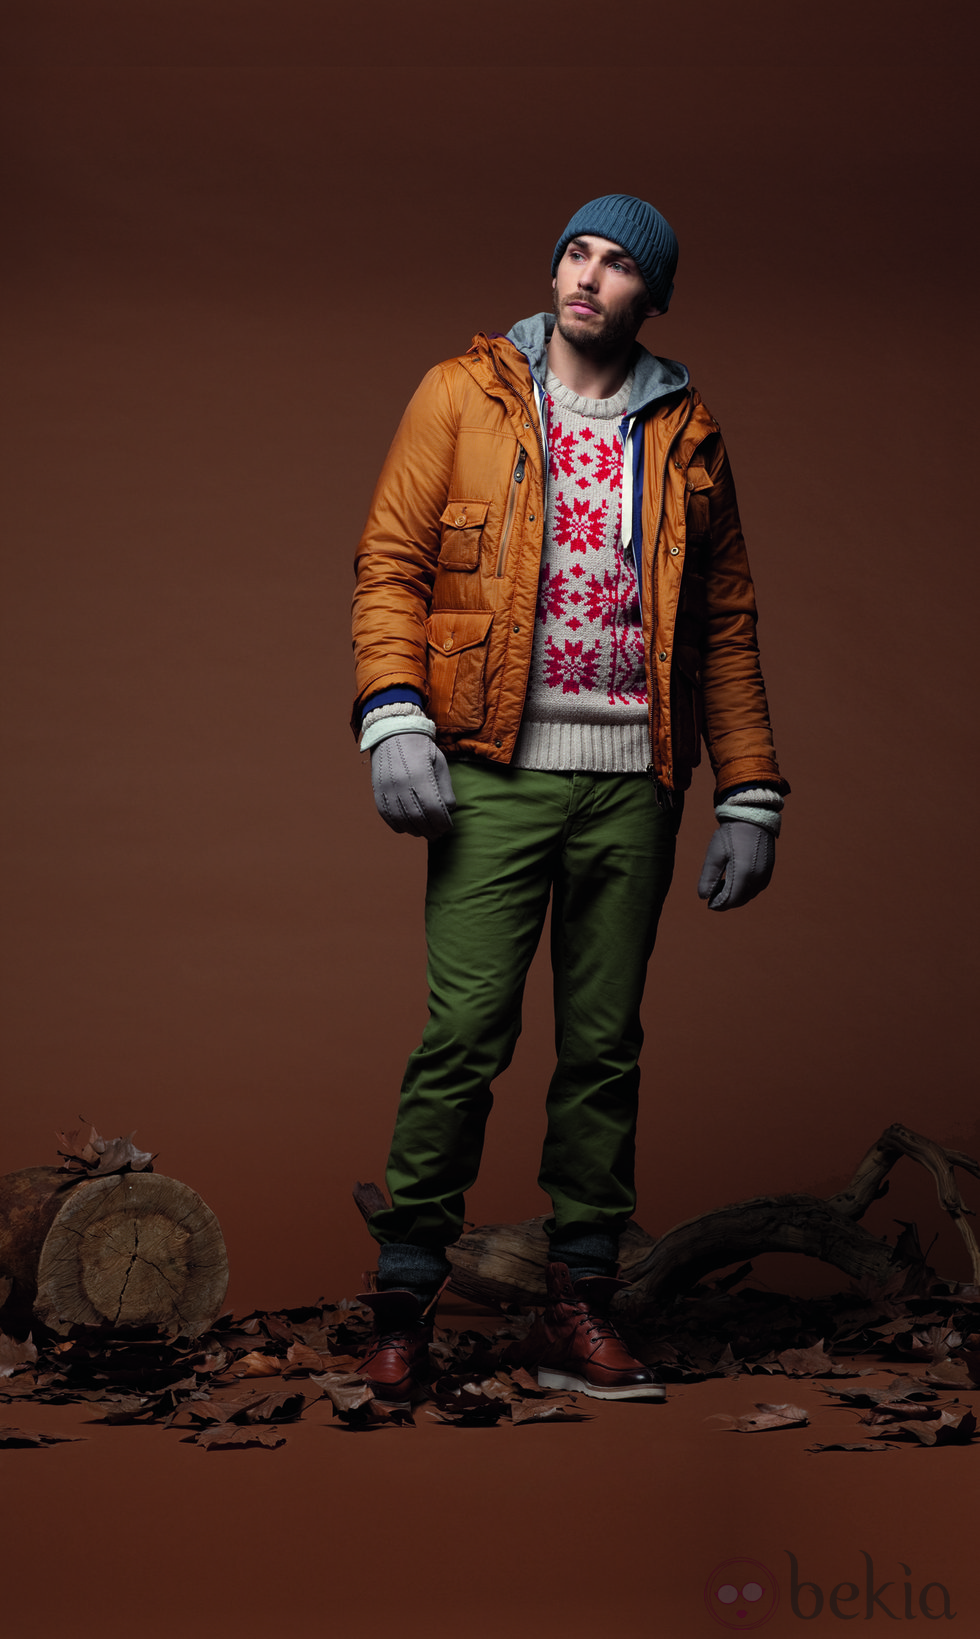 Cazadora marrón con jersey estampado y pantalón verde de la colección otoño/invierno 2012/2013 de Chevignon